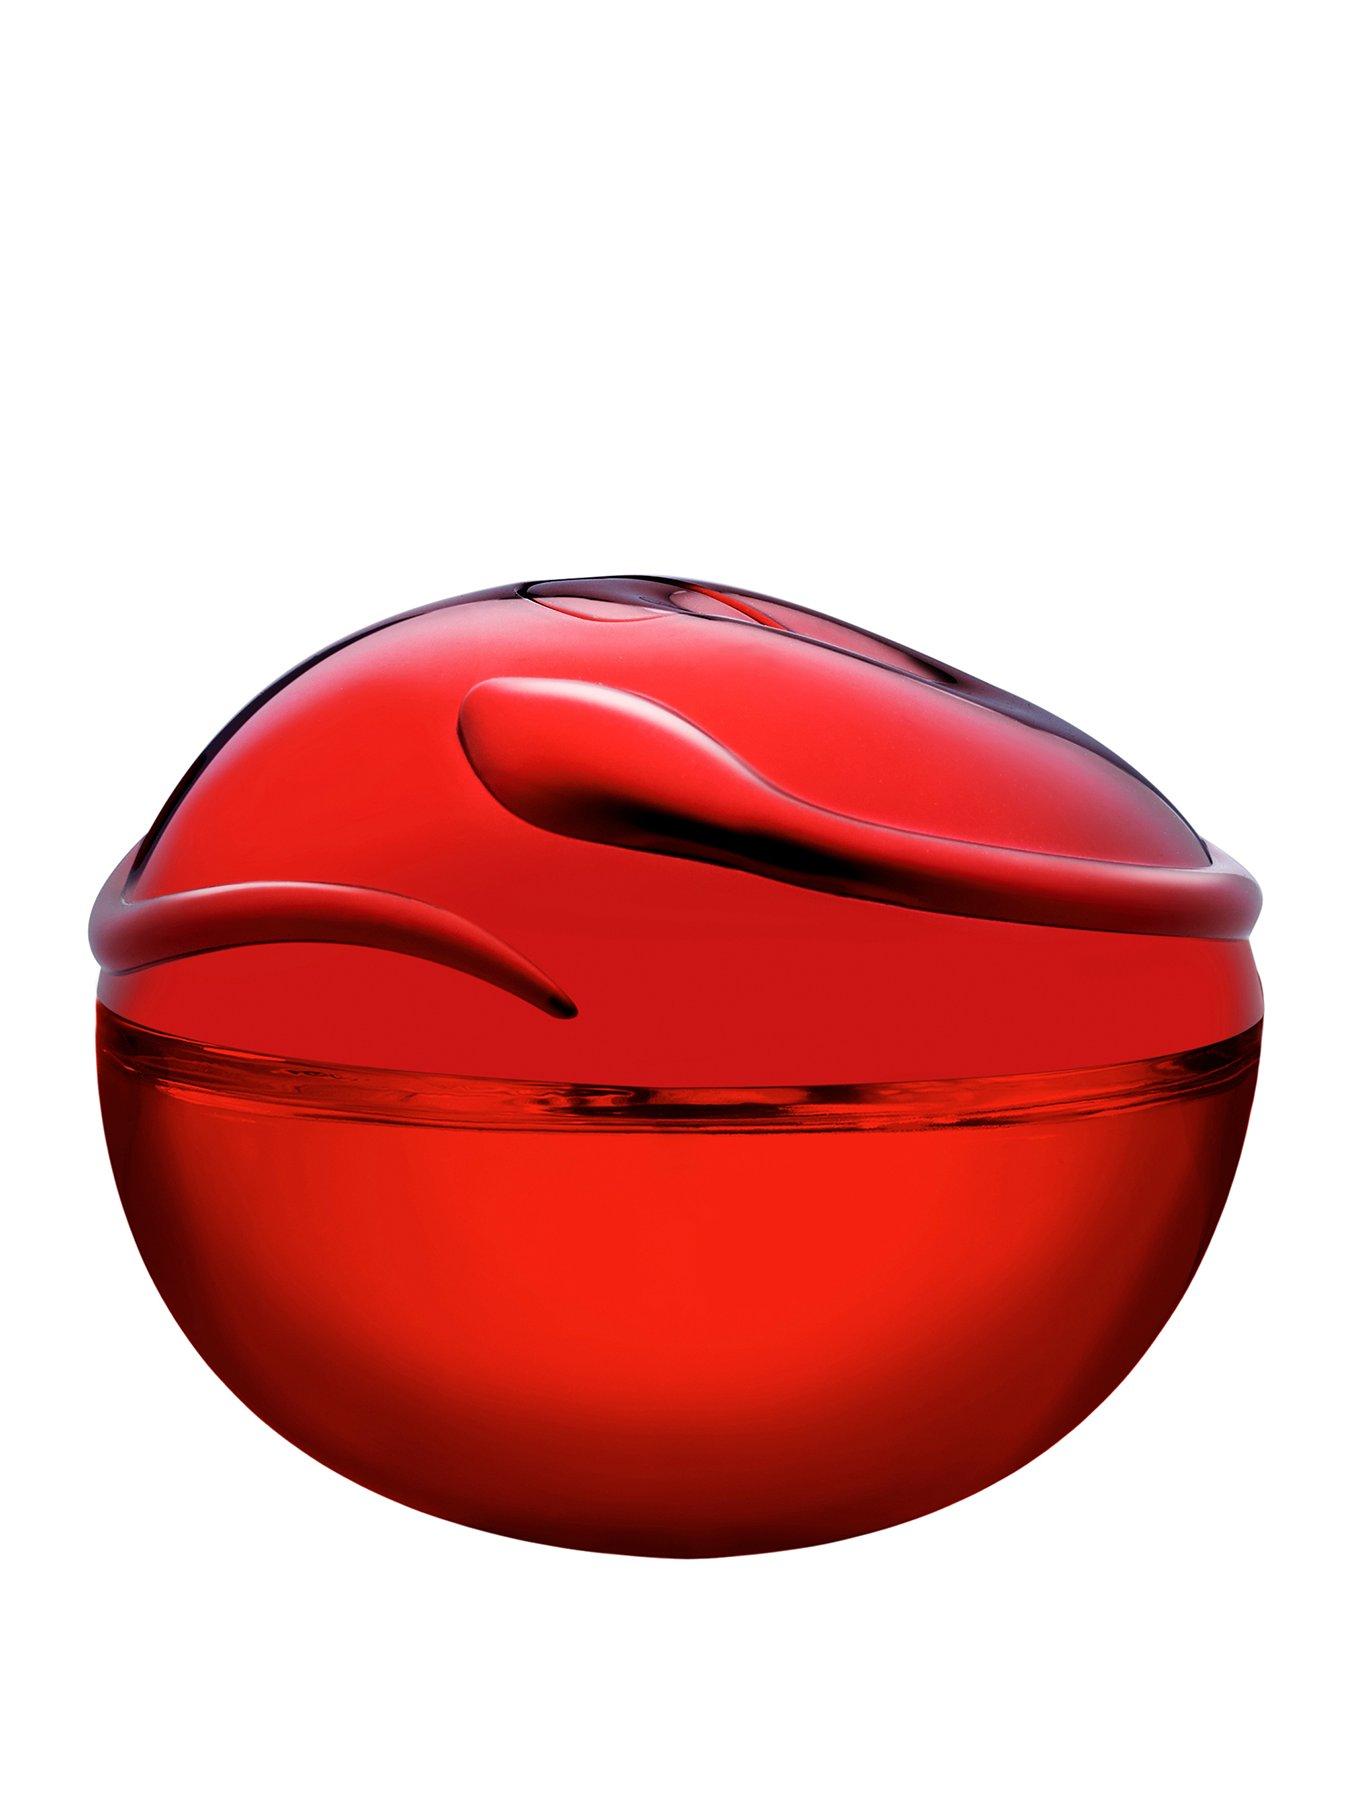 DKNY Be Tempted 100ml Eau de Parfum, Red, Women